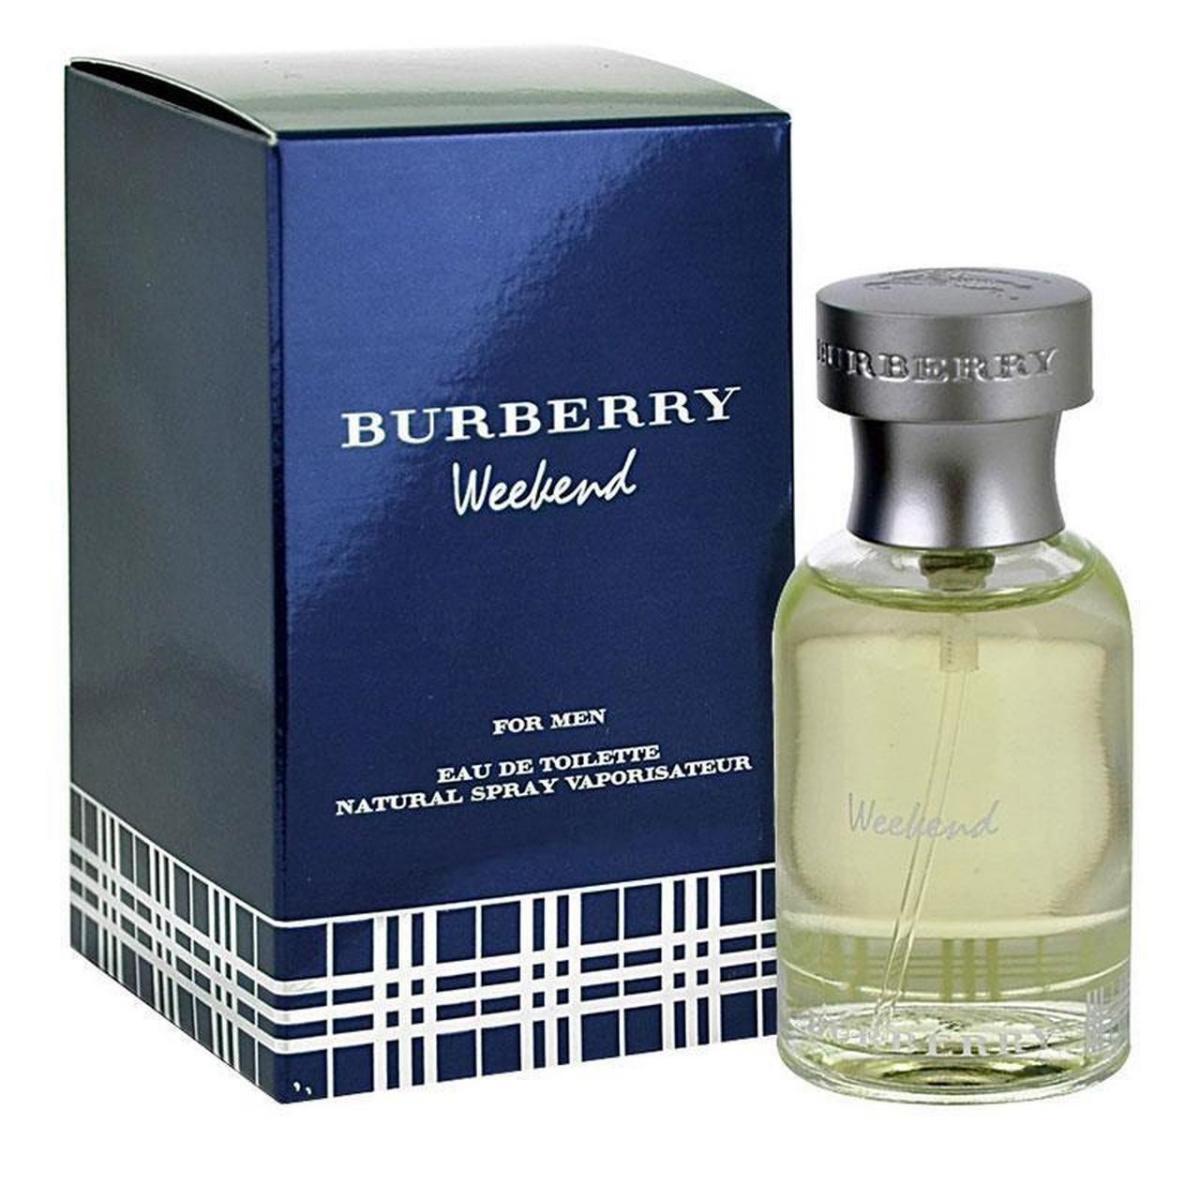 Burberry Weekend EDT Erkek Parfüm 100 ml Fiyatları ve Modelleri - Pazarama